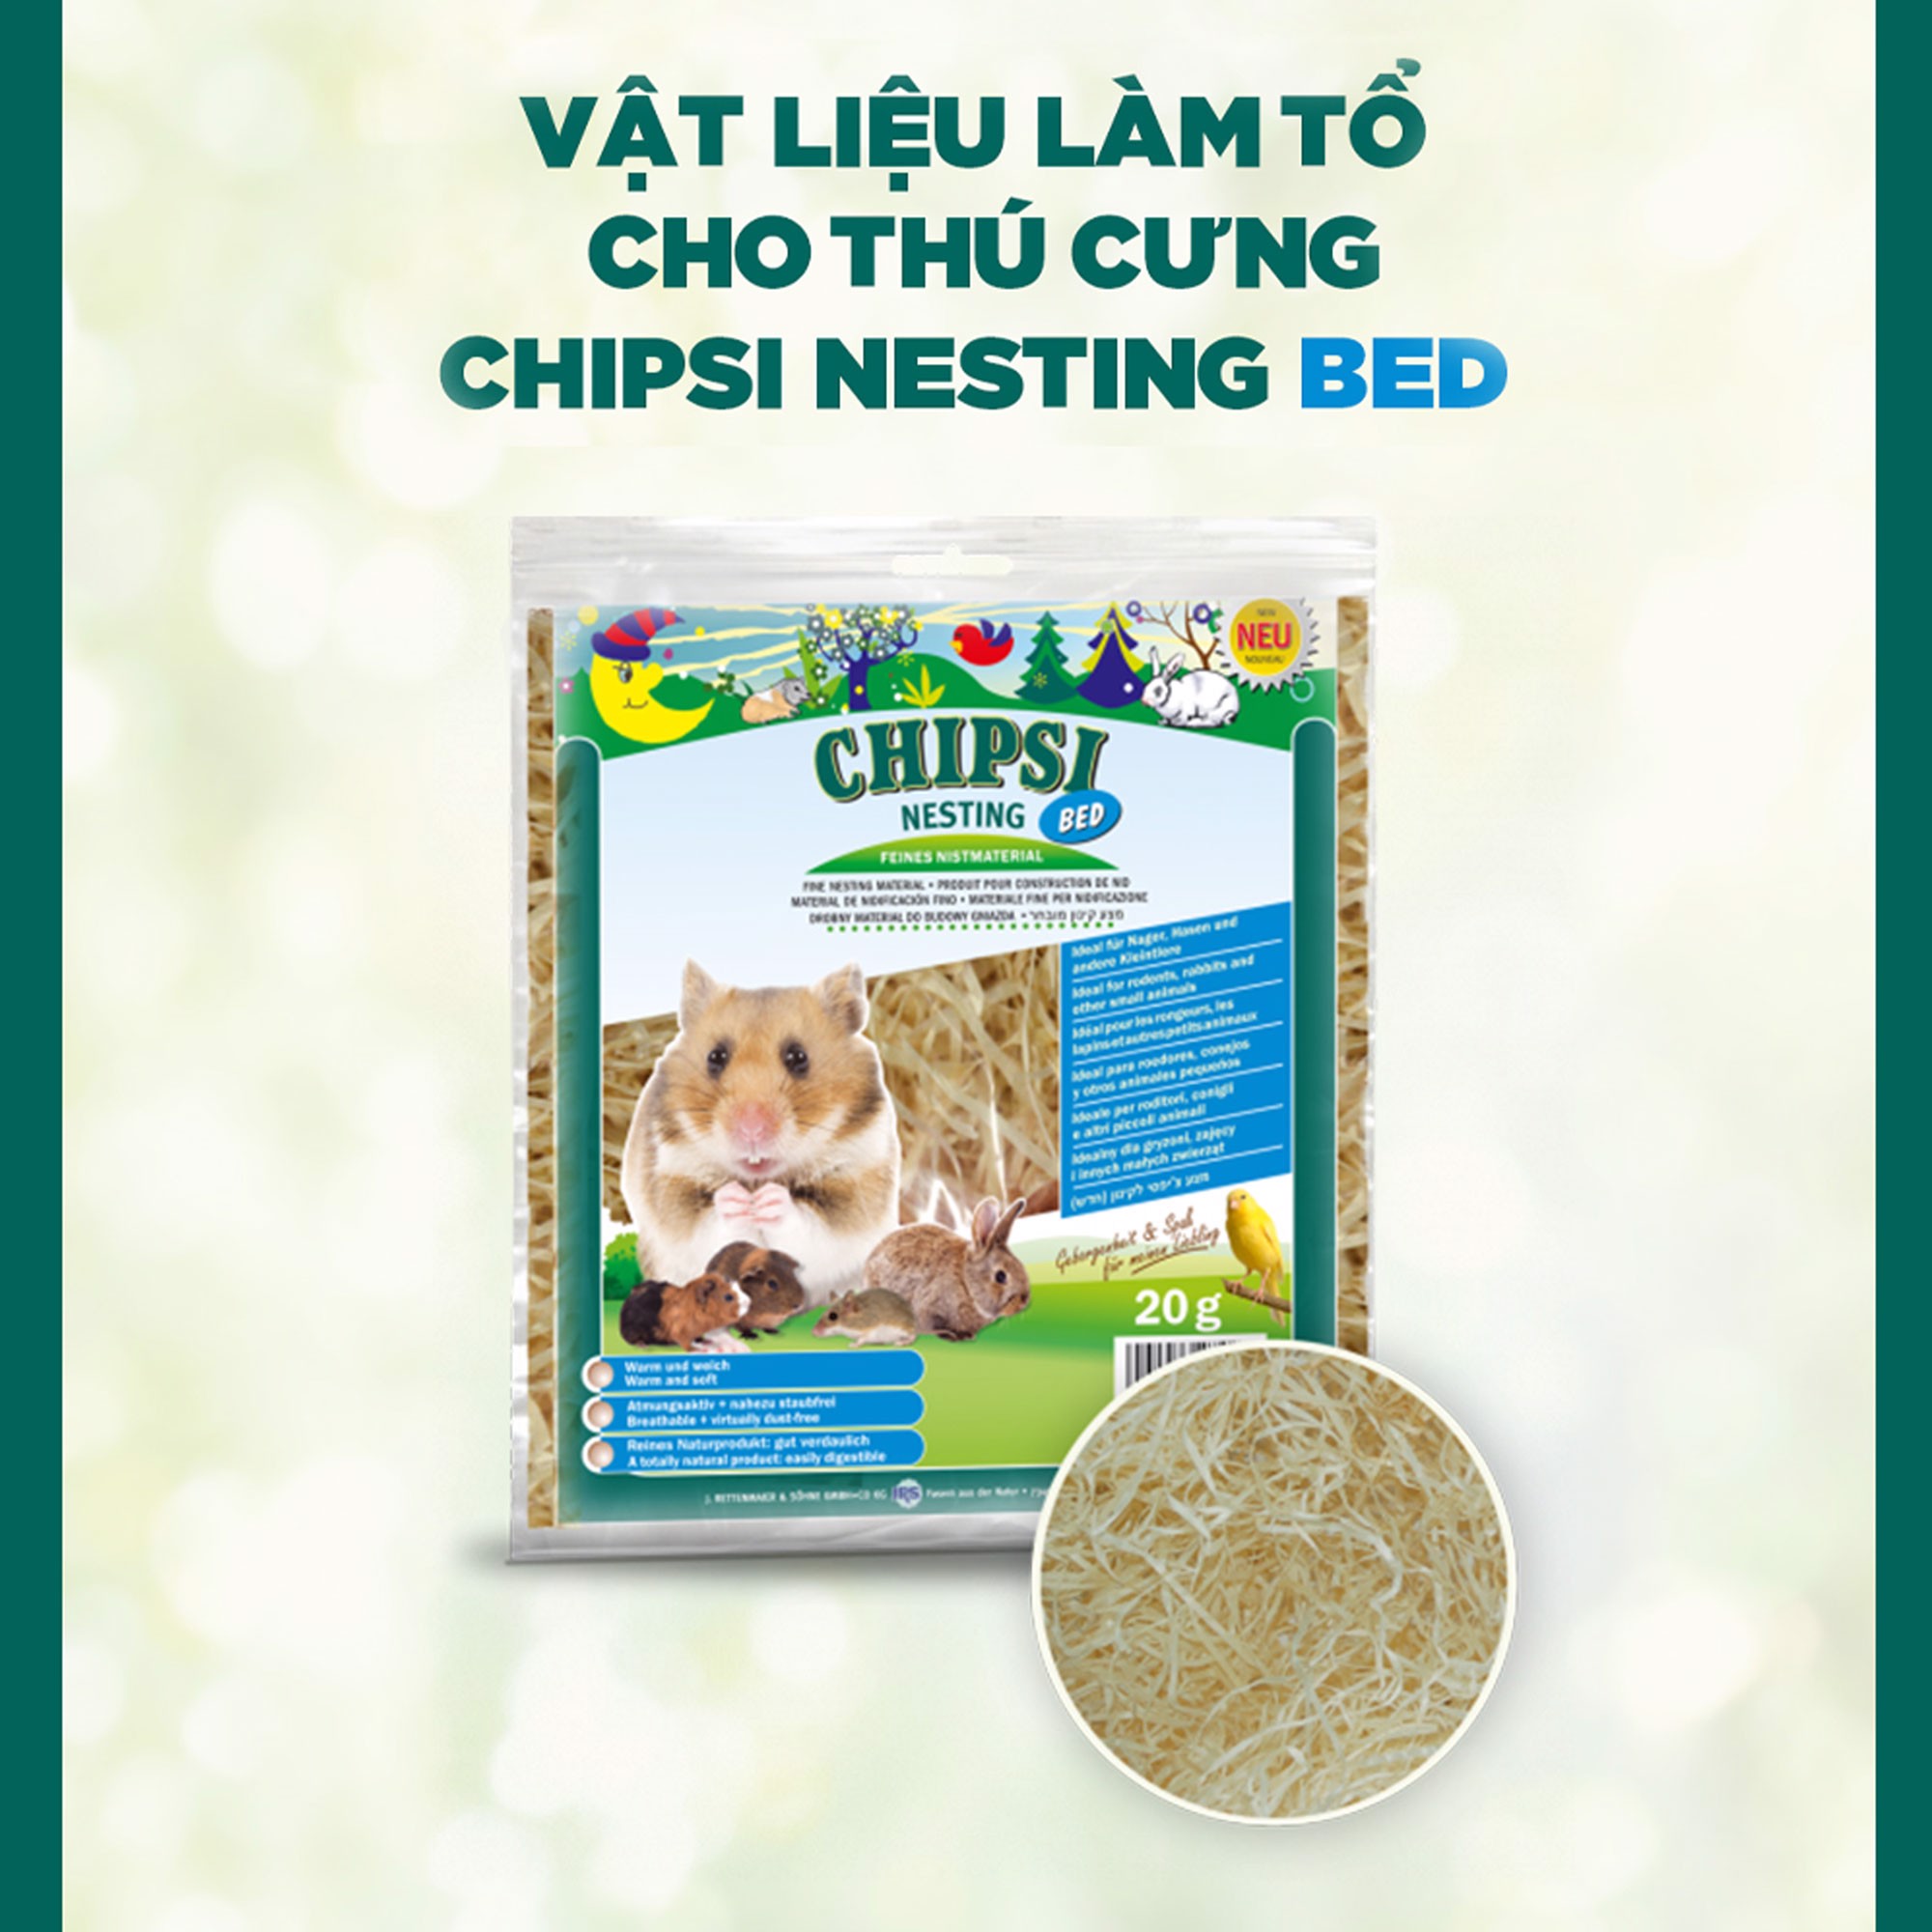 Hình ảnh CHIPSI NESTING - Lót Chuồng Cho Hamster (Chuột/Chim/Bò sát/Sóc) | Vật liệu làm tổ cho thú cưng | 100% gỗ bào tự nhiên | Không bụi